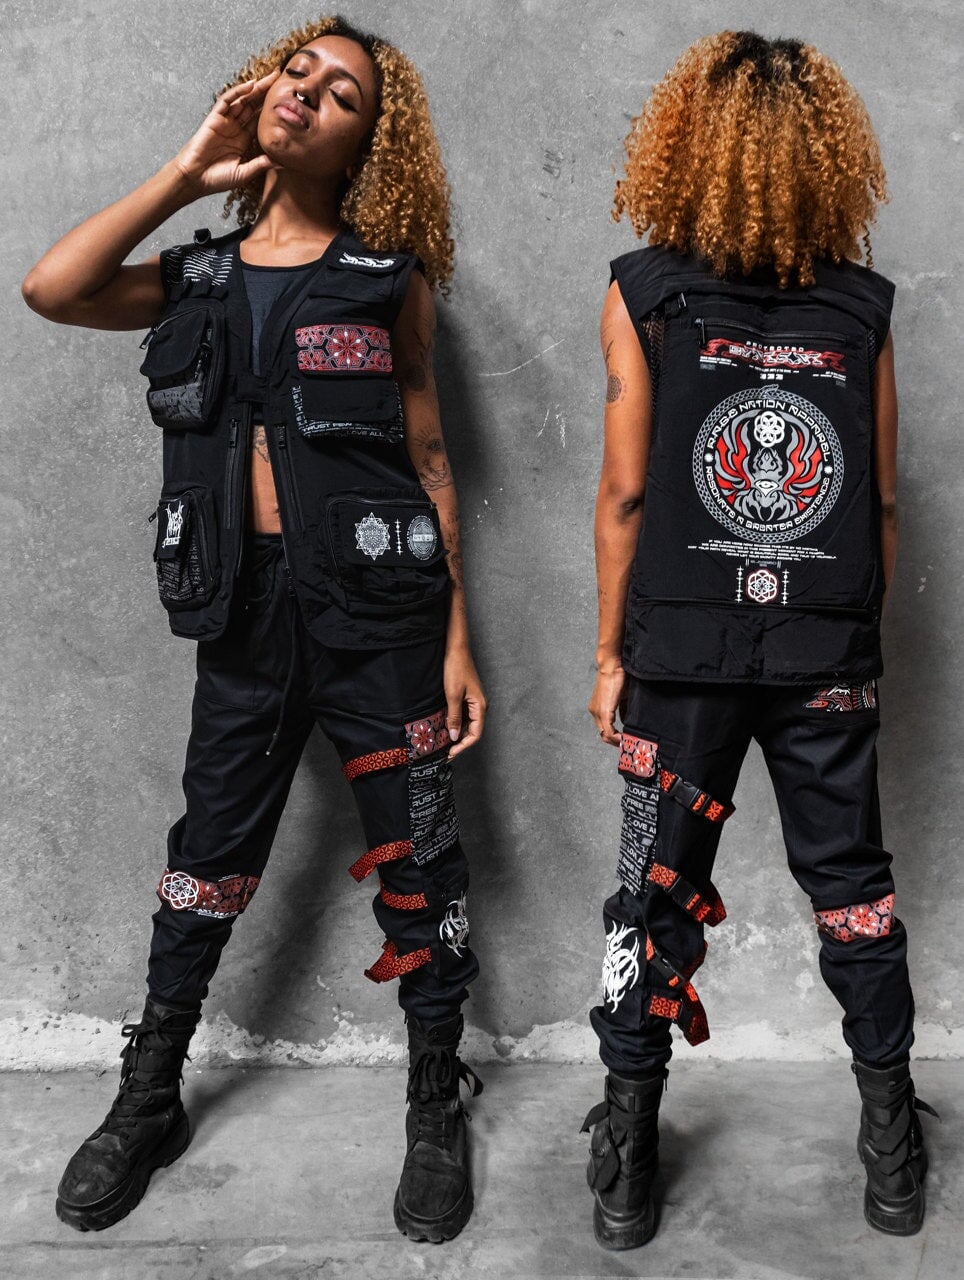 ✦ PROTECTED BY INTENT V1 ✦ RED/BLACK ✦ TACTICAL VEST Vest 